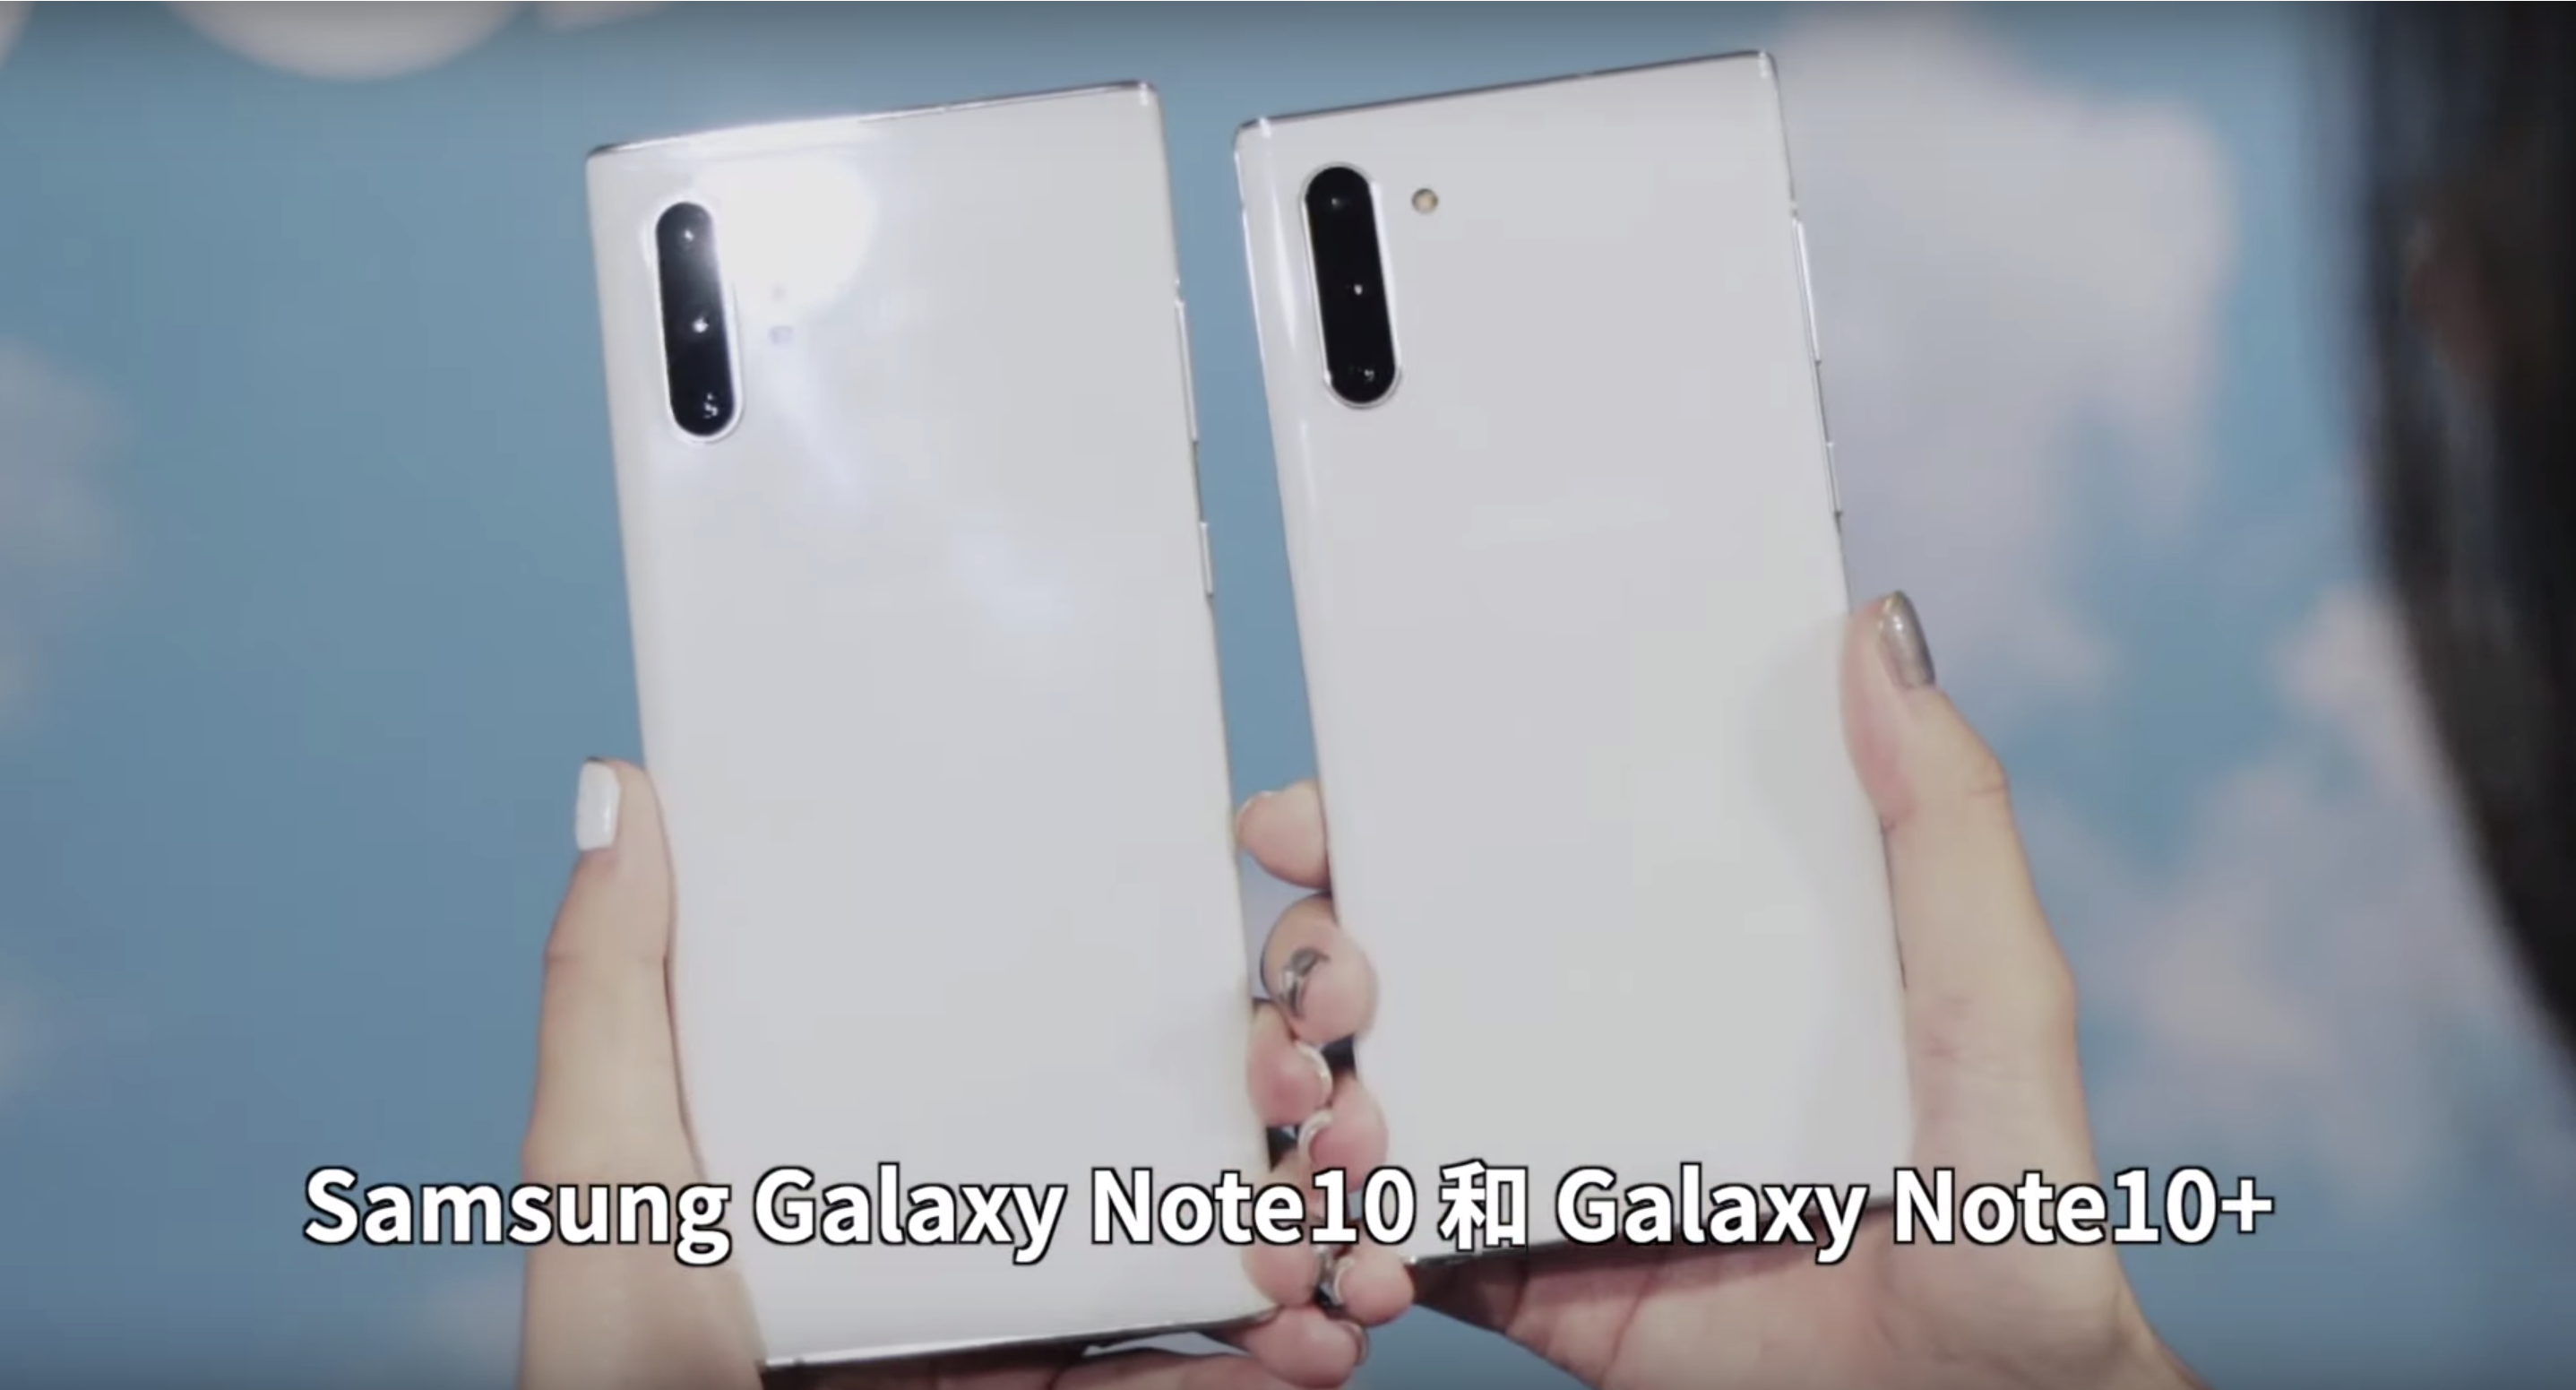 【搶先體驗】Samsung Galaxy Note10/Note10+ 新功能上手！你該選擇誰？｜Air Actions、S Pen、規格、握持手感、Infinity-O、錄影模式、ToF鏡頭｜科技狗 - Galaxy, galaxy note10+, galaxynote10, note, note10, Samsung, 三星, 台灣三星, 韓國三星 - 科技狗 3C DOG